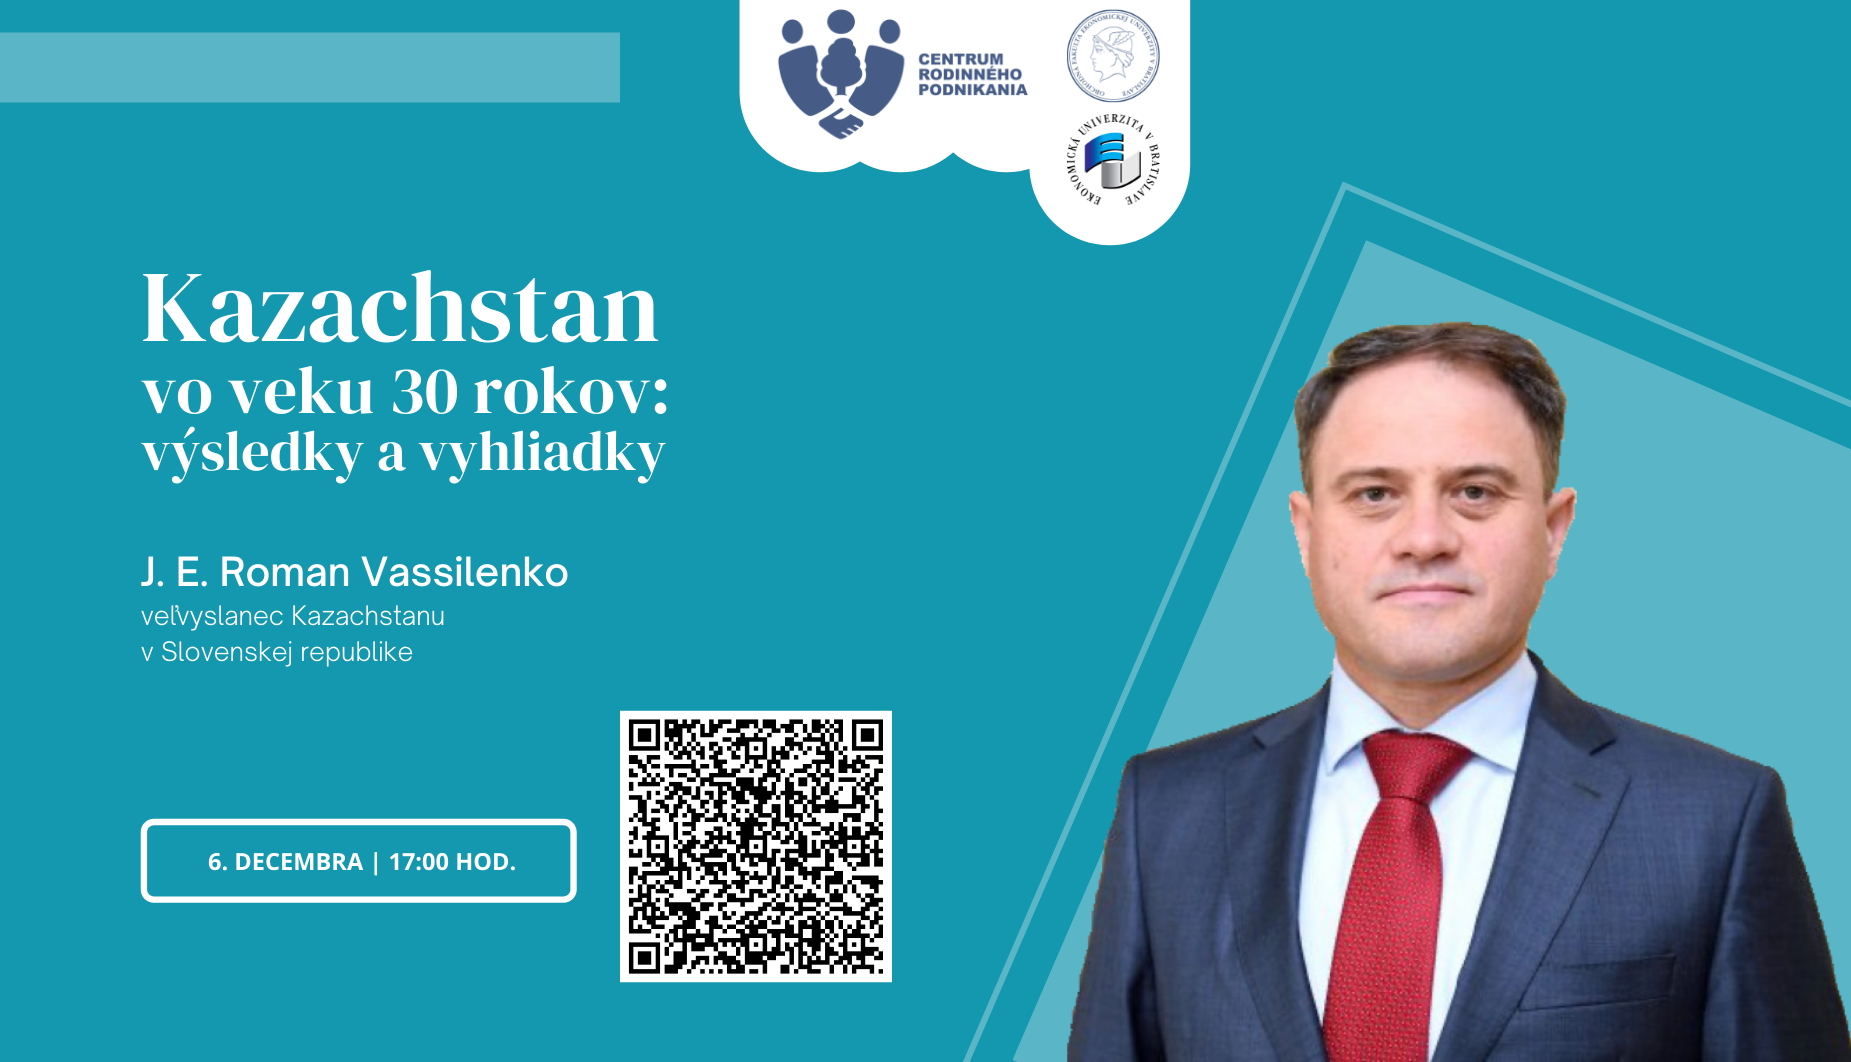 Kazachstan vo veku 30 rokov: na Slovensku sa oboznámili s výsledkami a perspektívami rozvoja krajiny a bilaterálnych vzťahov